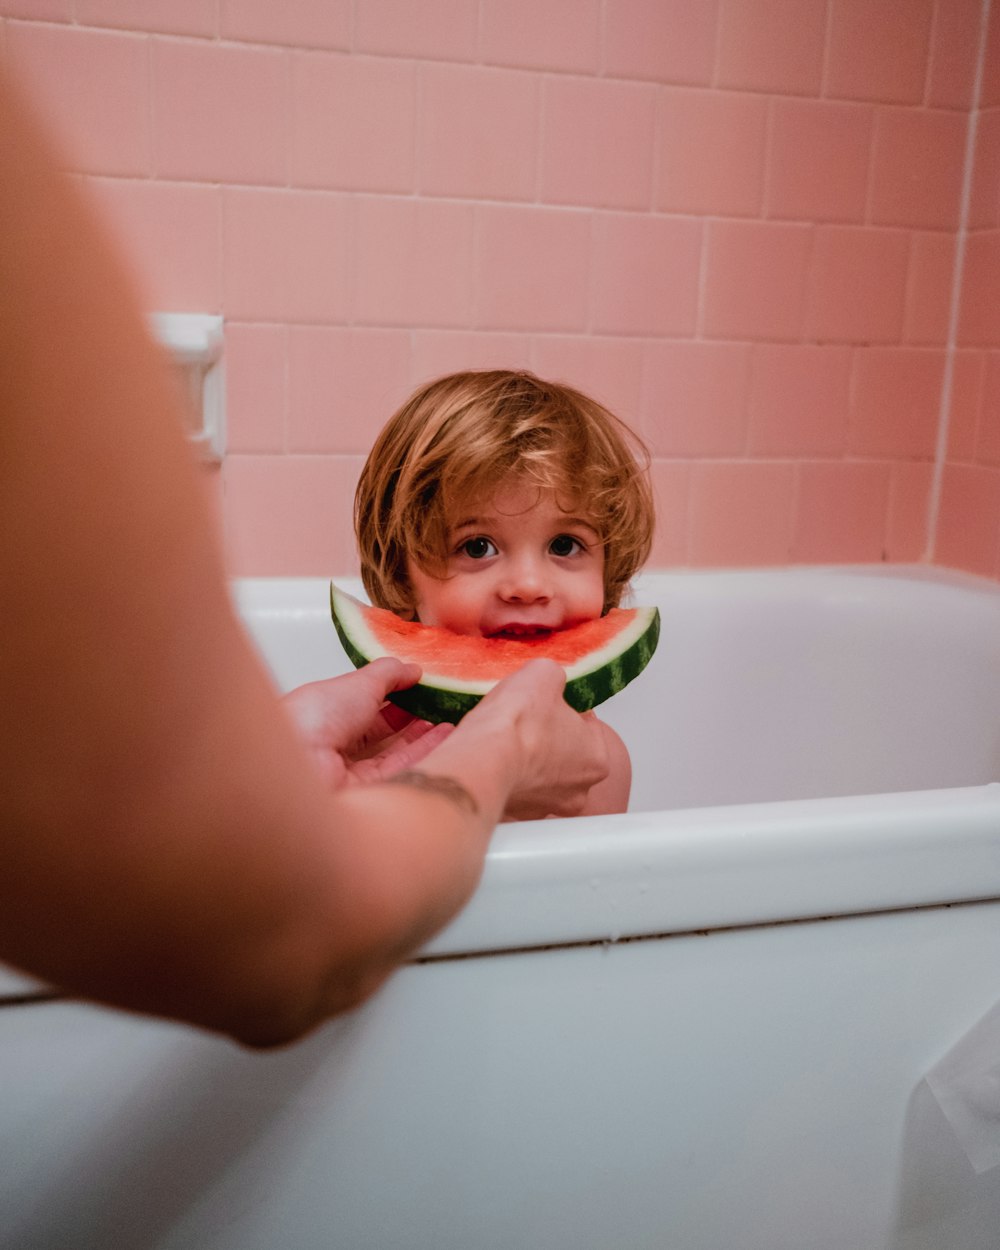 수박을 먹는 욕조에 있는 소년의 사진